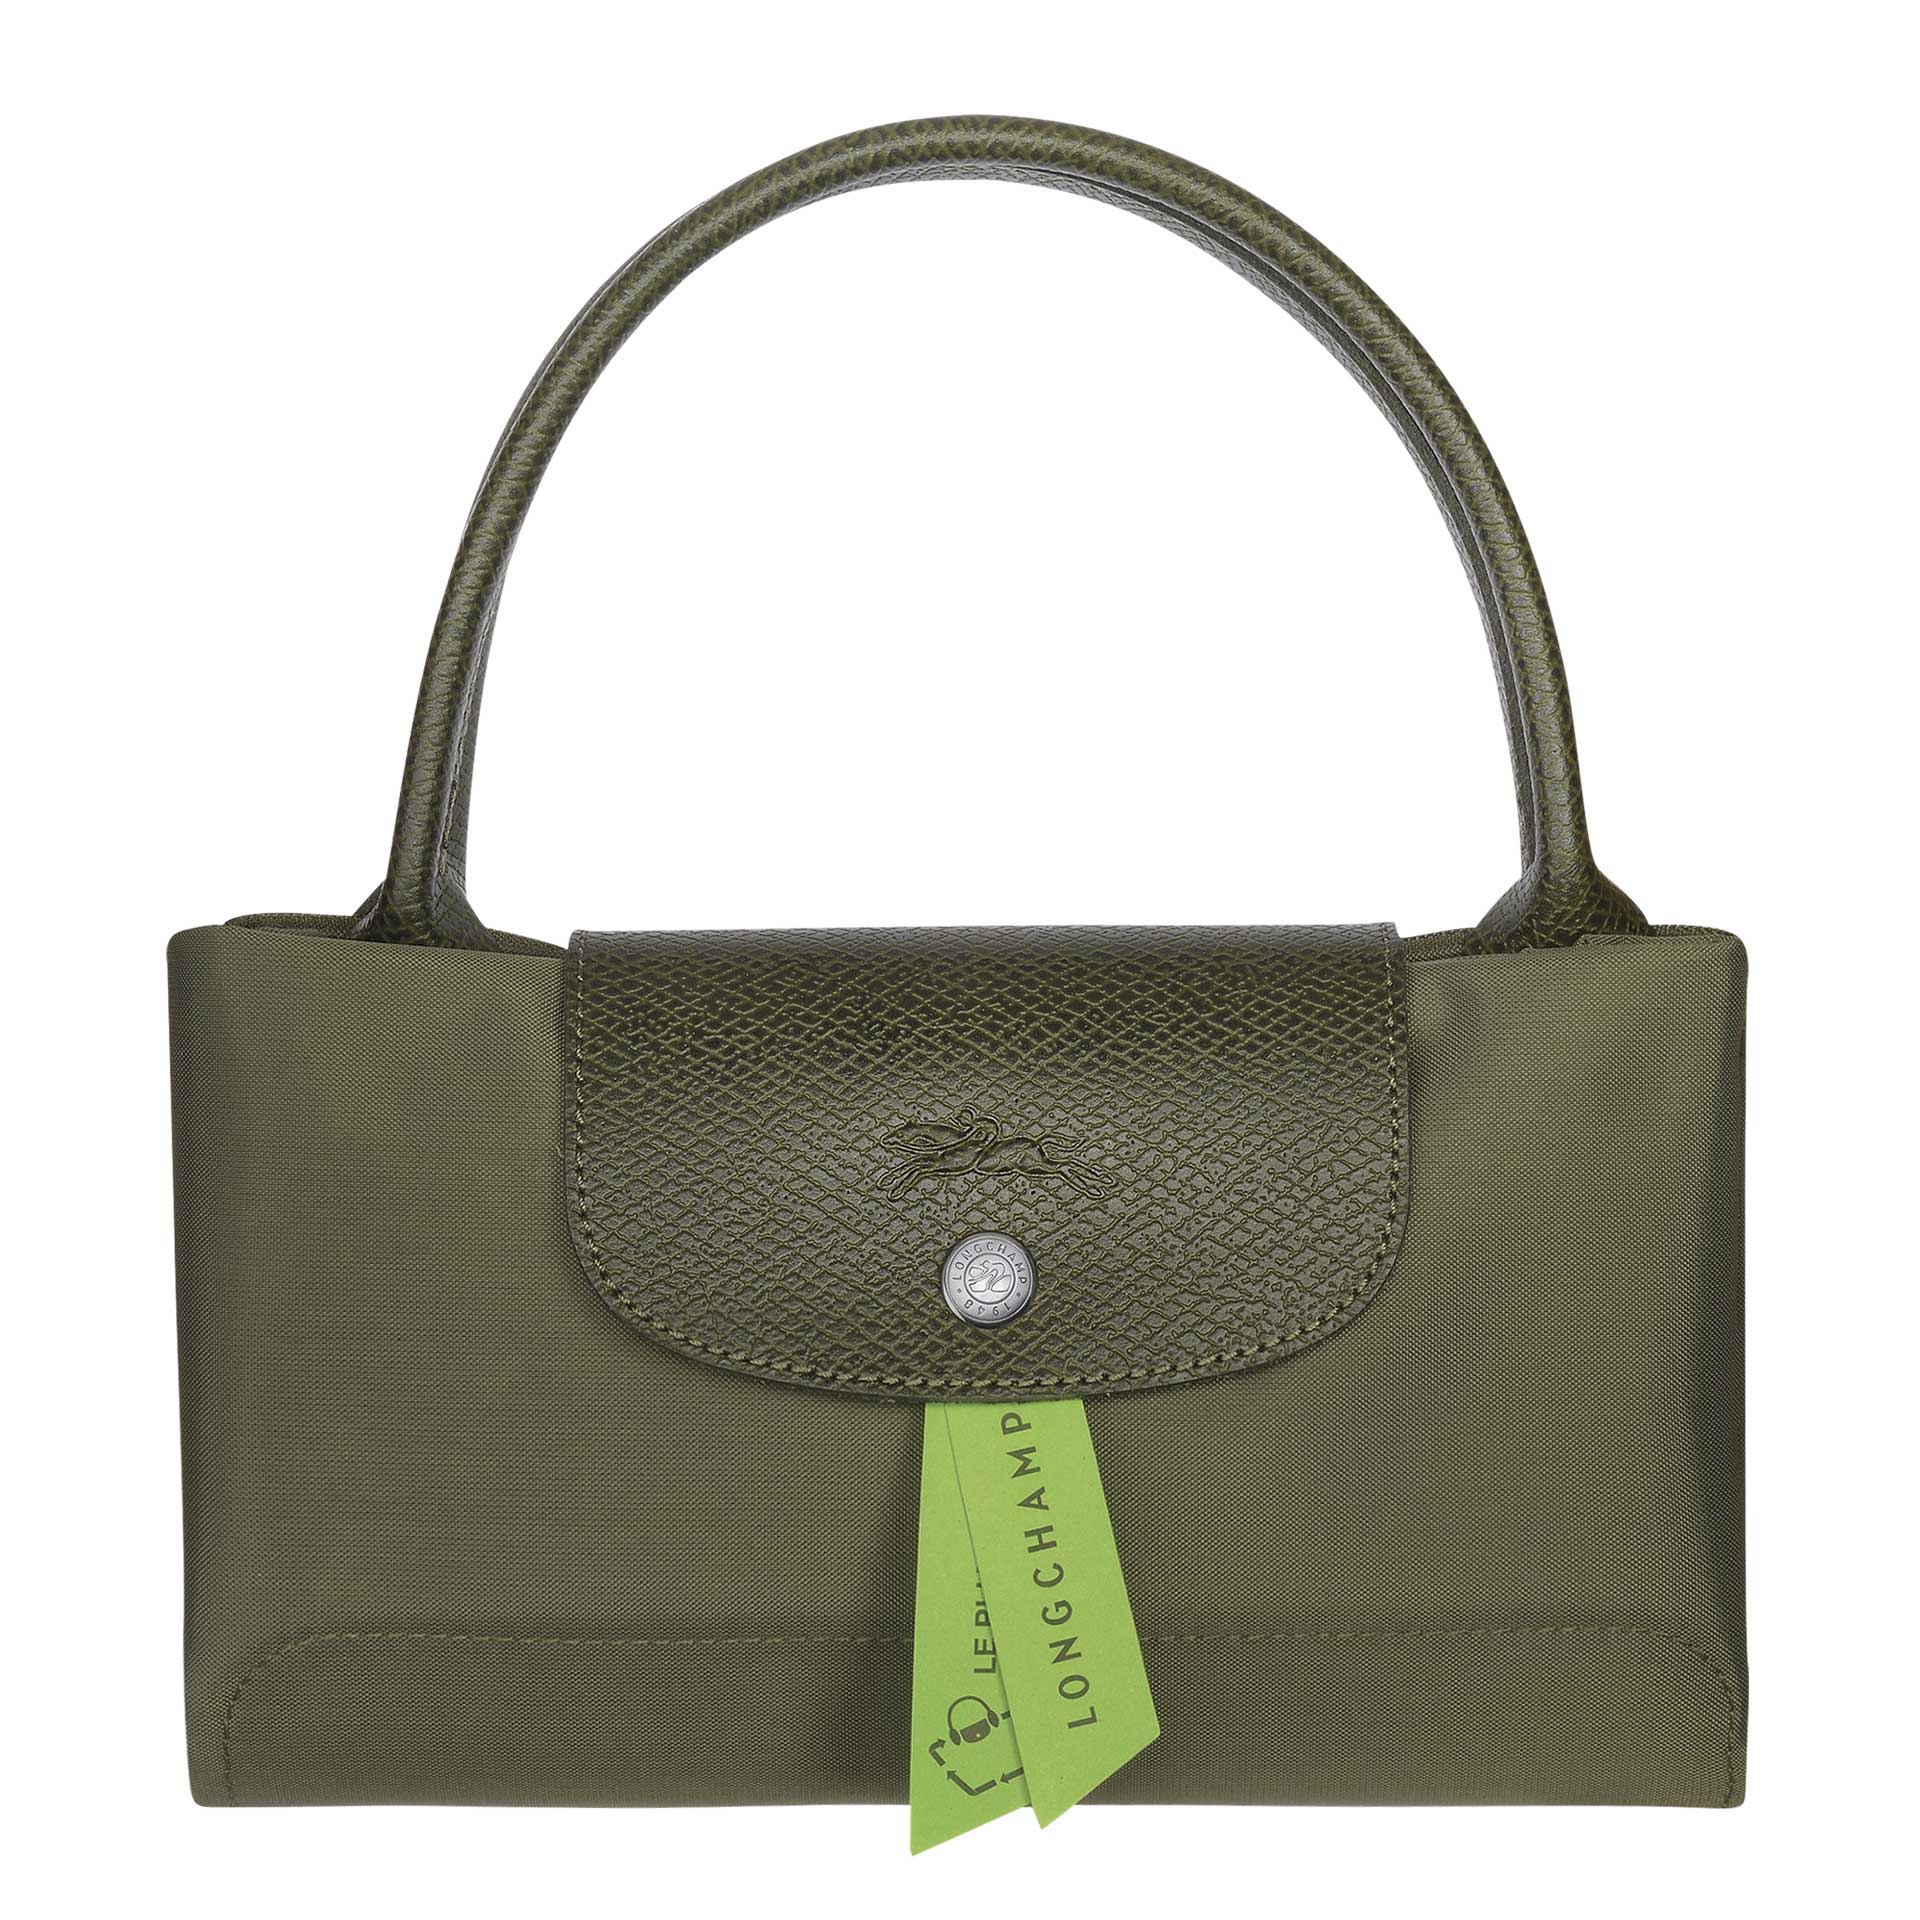 Longchamp Le Pliage Green Handtasche M forest